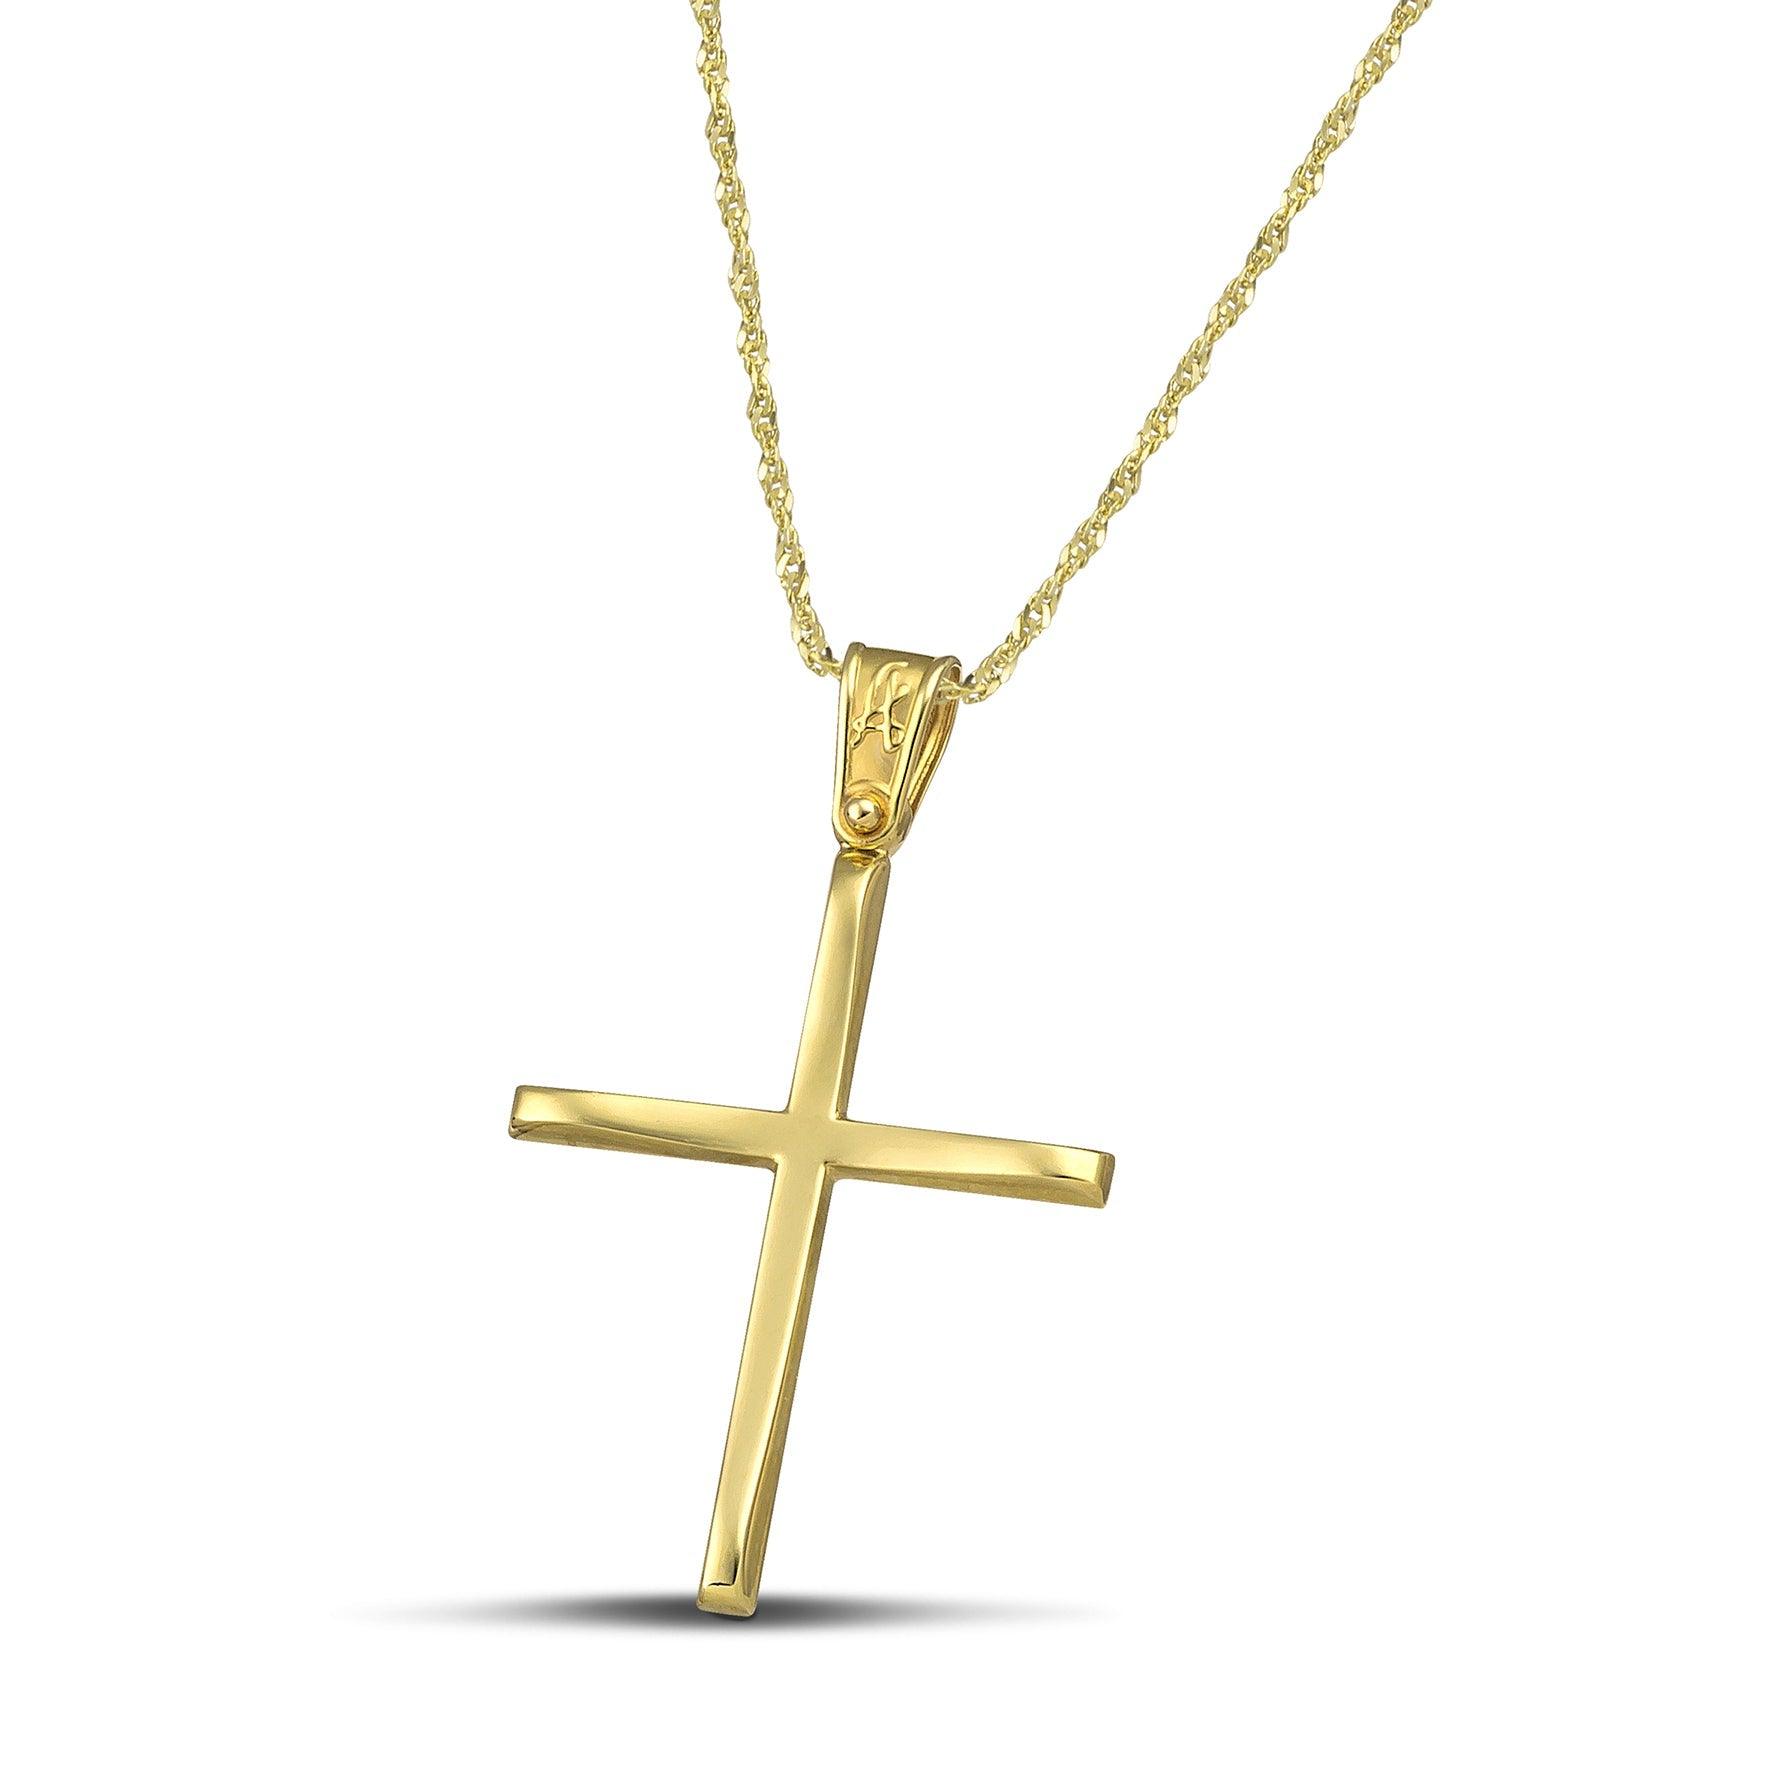 Χρυσός βαφτιστικός σταυρός Κ14, με κλασσικό σχεδιασμό. Γυναικείο χειροποίητο κόσμημα περασμένο σε λεπτή, στριφτή αλυσίδα.